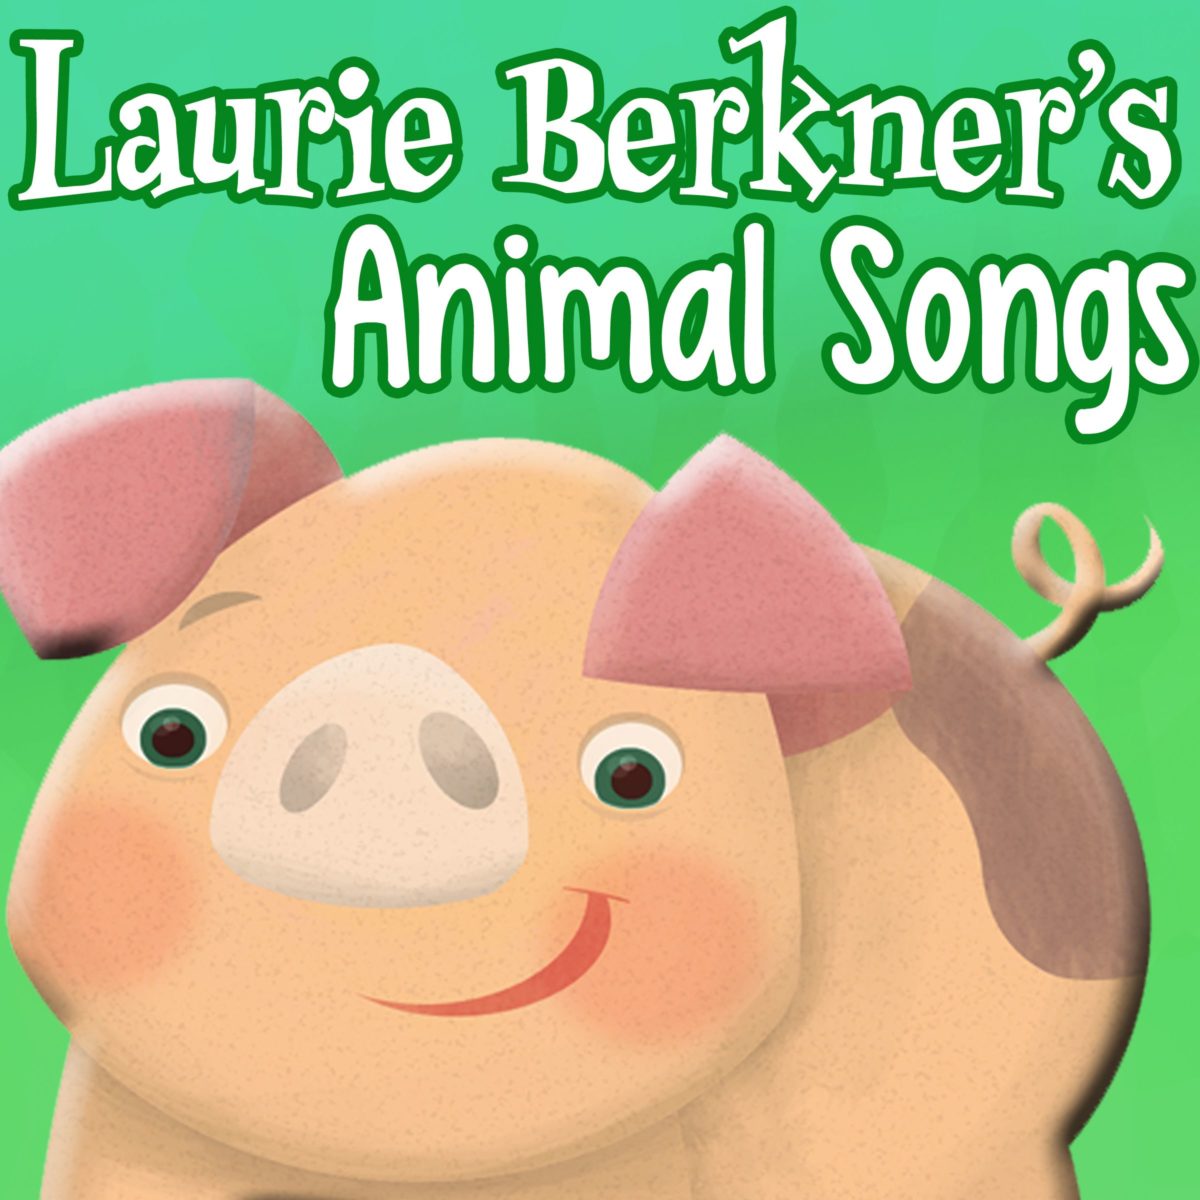 Laurie Berkner’s Animal Songs